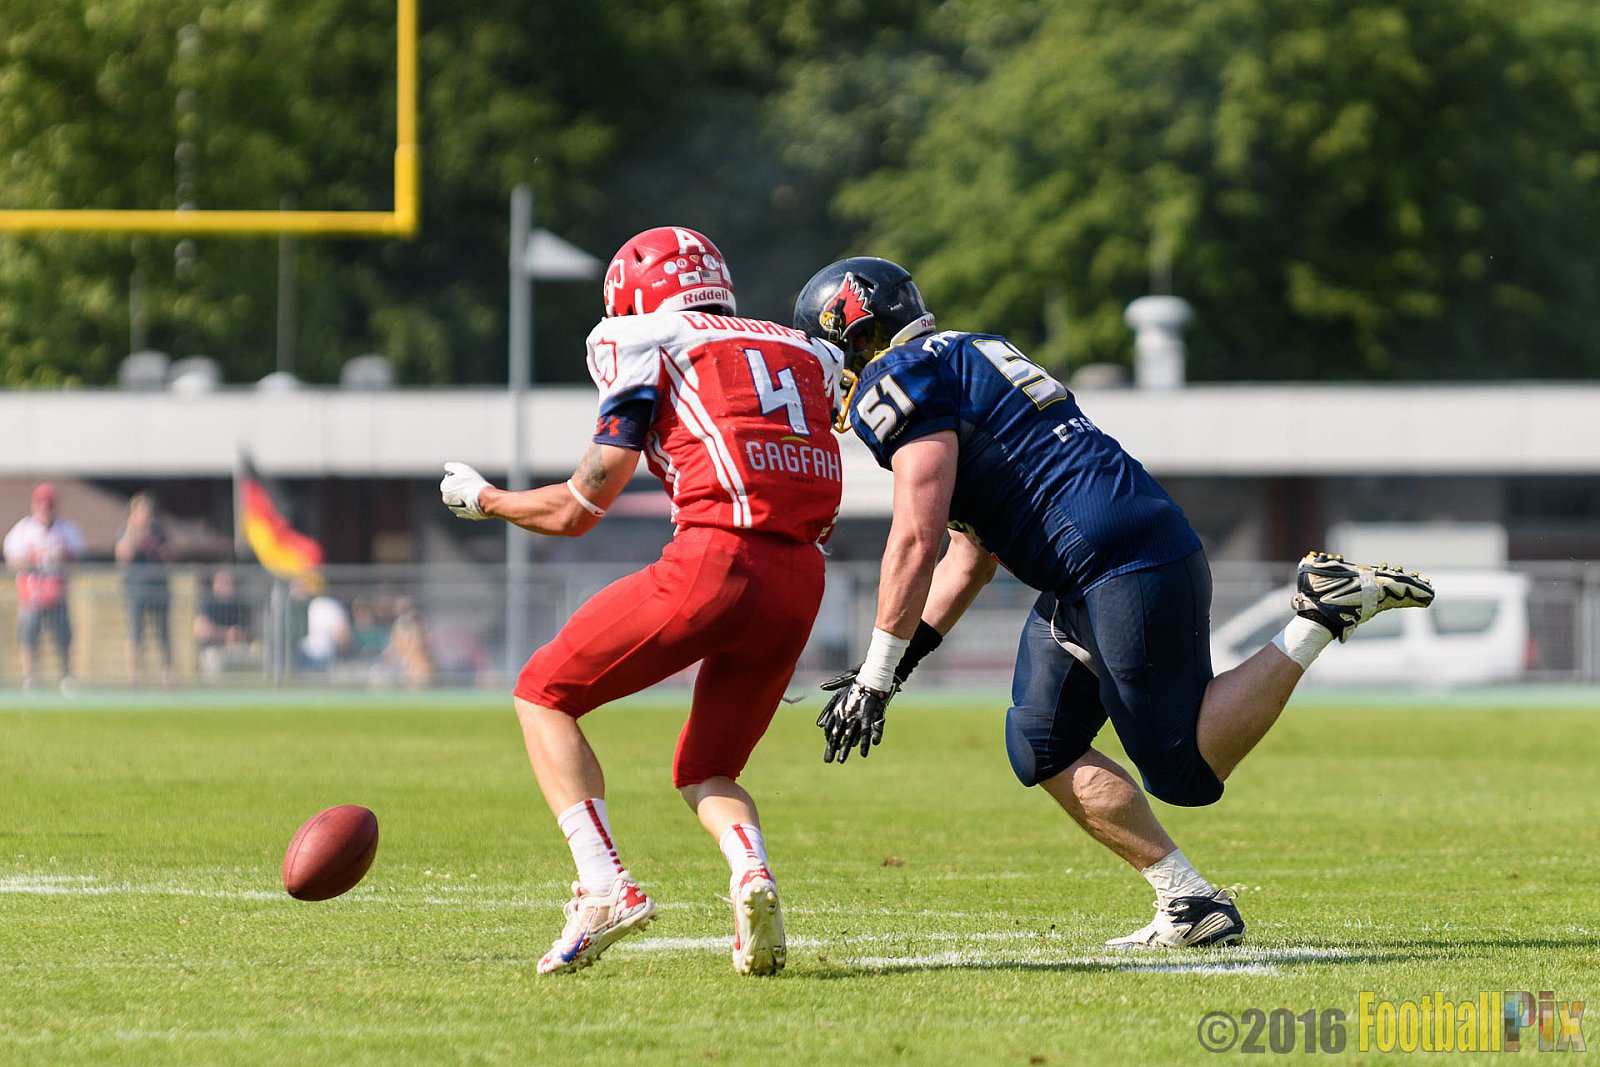 Essen Assindia Cardinals vs. Lübeck Cougars - 05.06.2016 GFL2: Essen Assindia Cardinals vs. Lübeck Cougars (16:35)